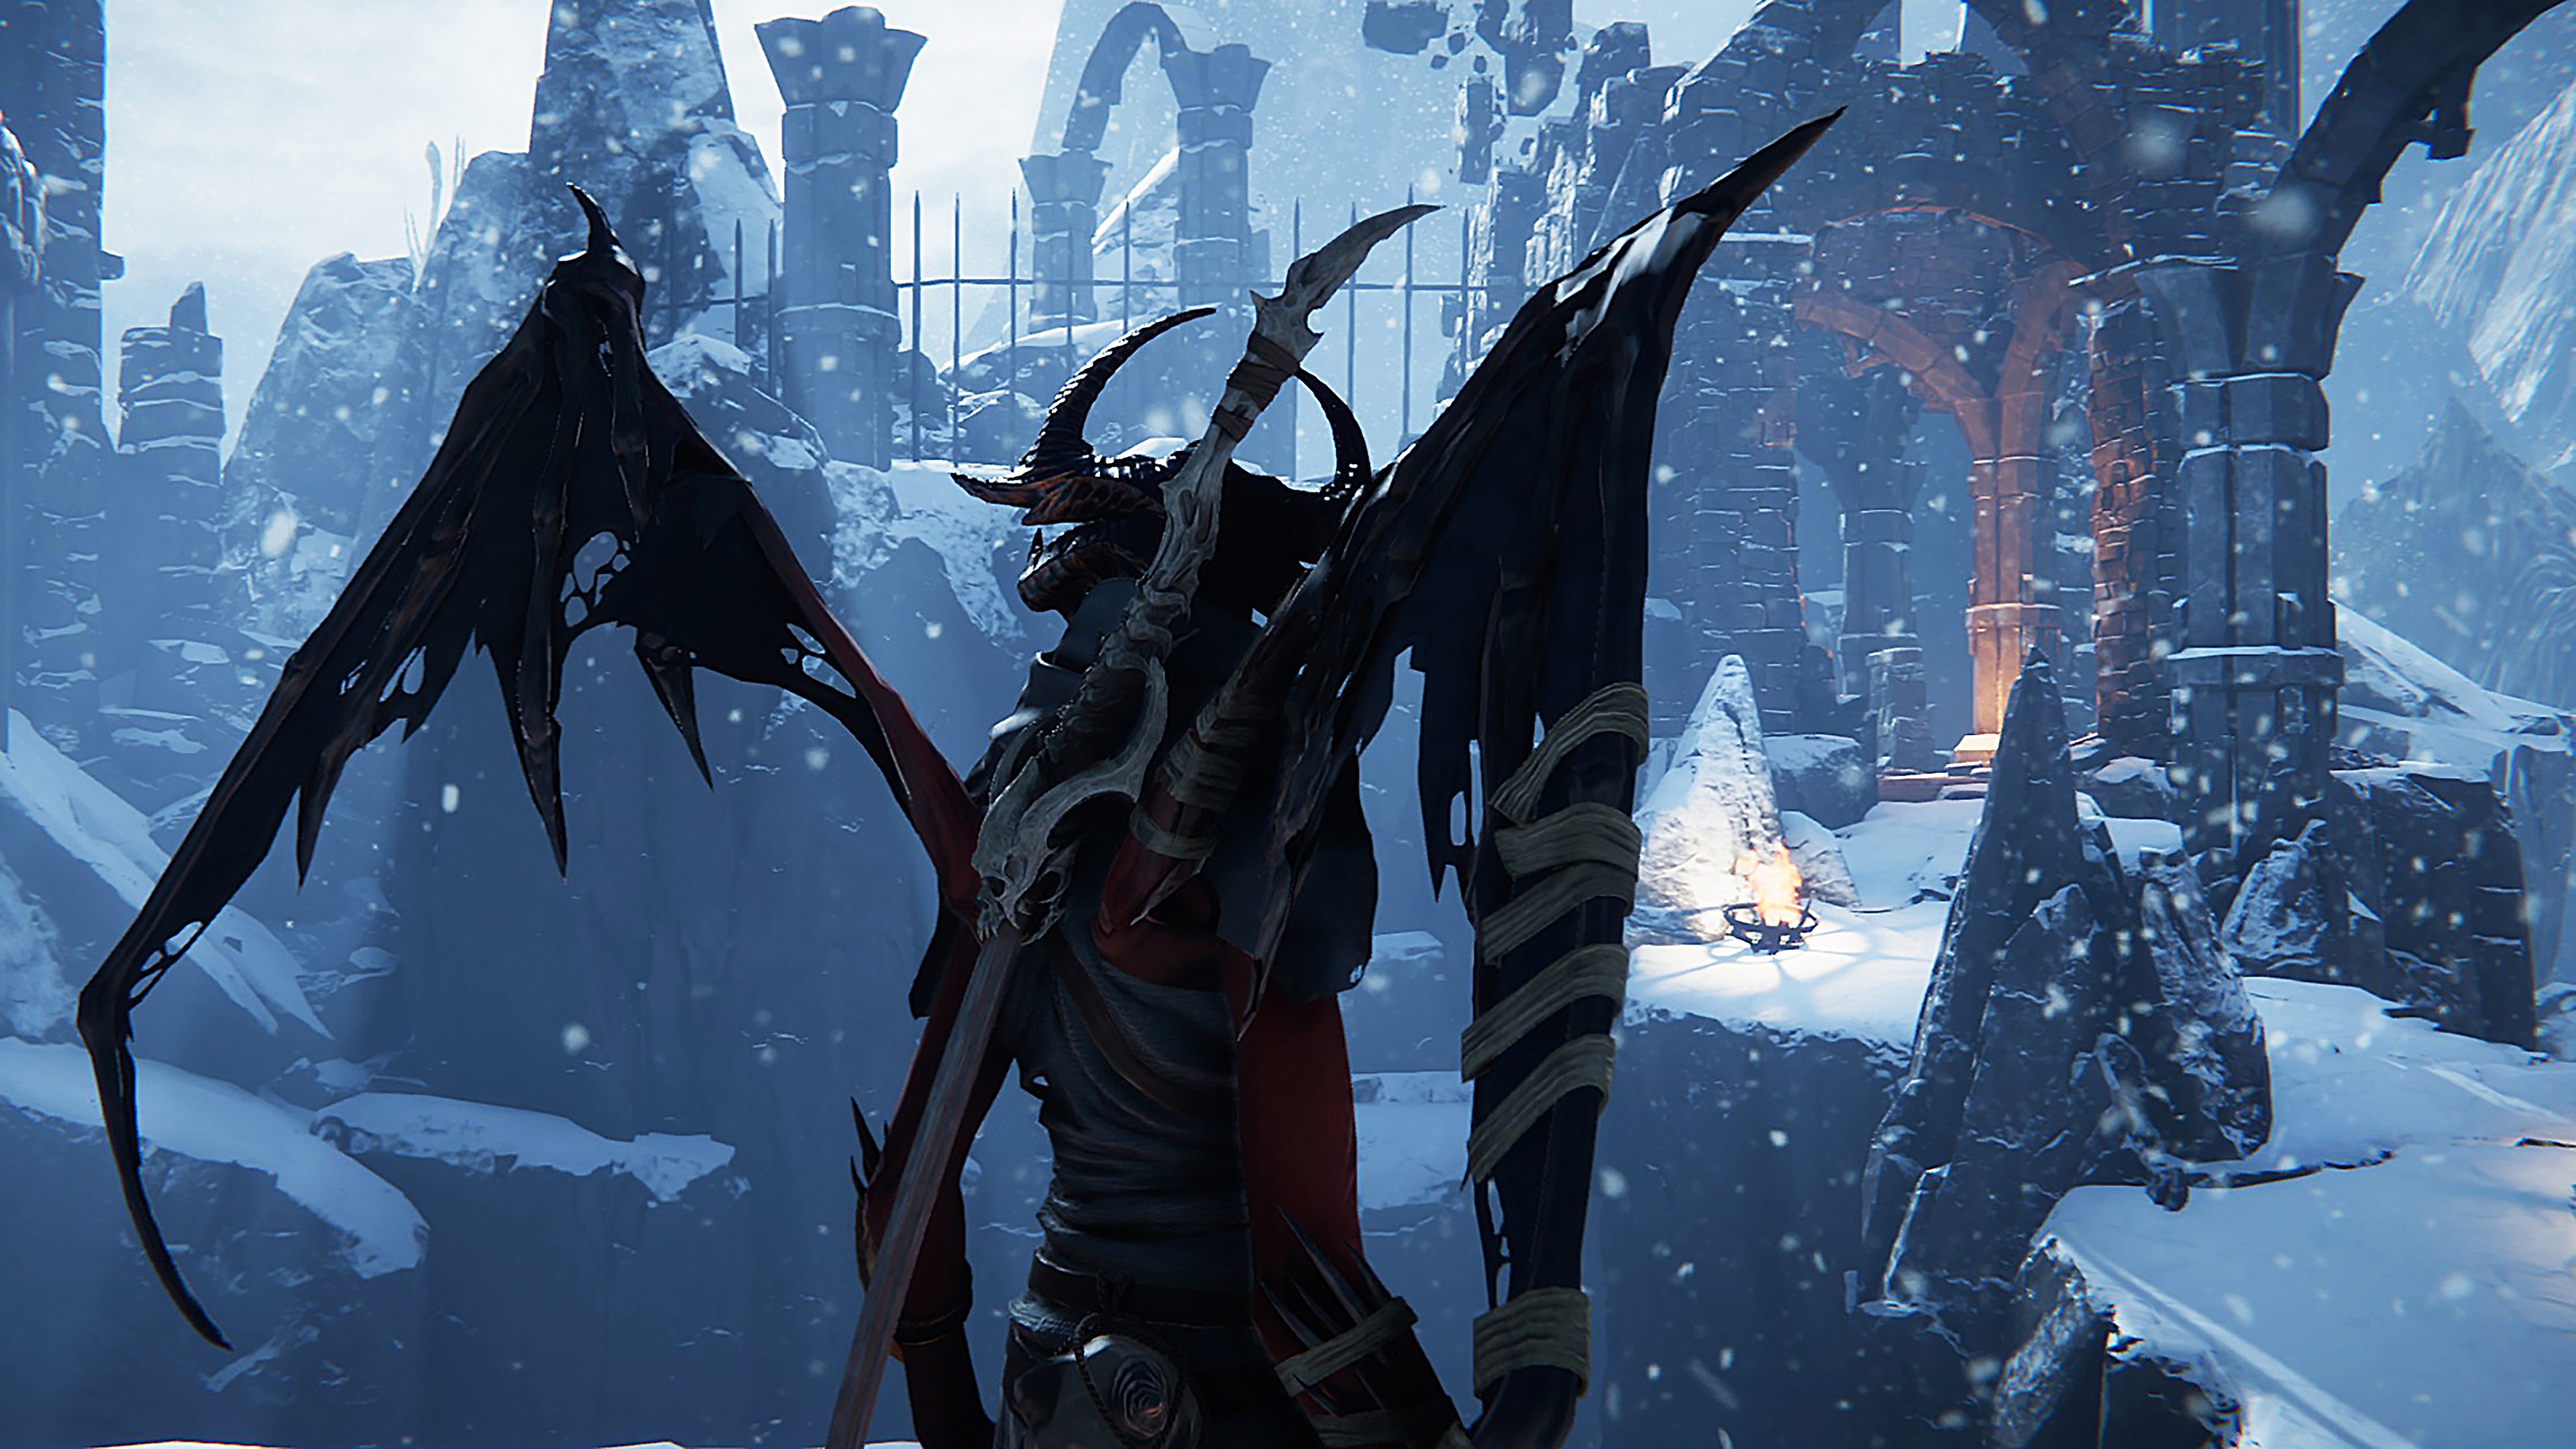 《Metal:Hellsinger》螢幕截圖，描繪一個帶翅膀的生物置身於白雪覆蓋的荒涼環境。